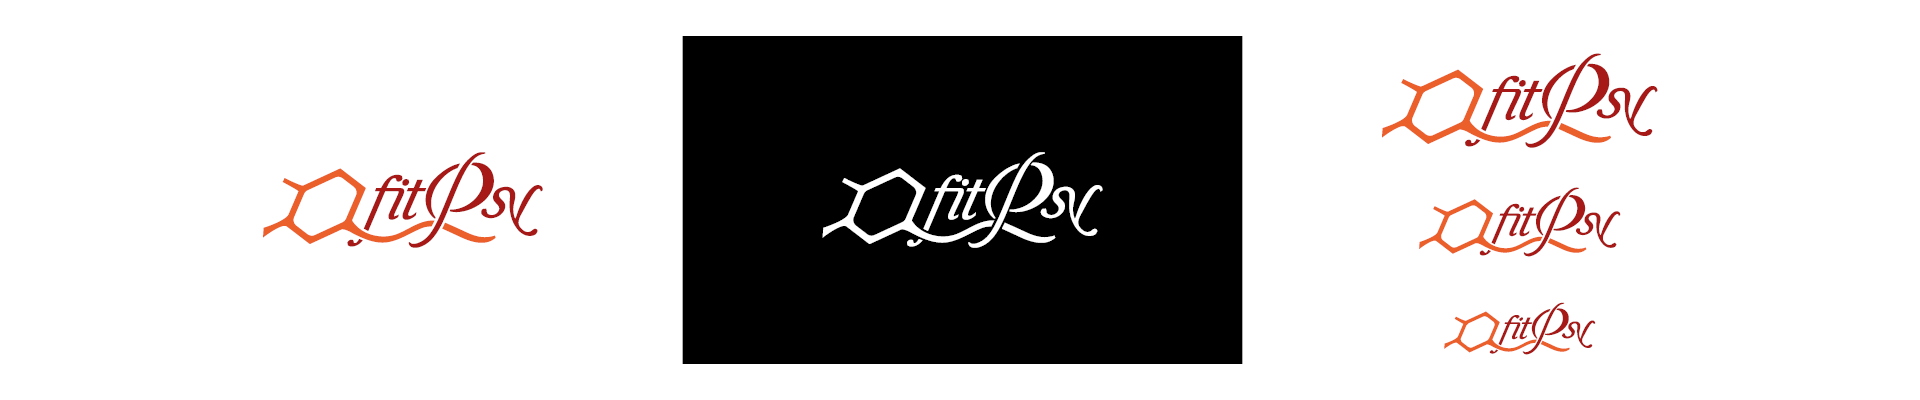 Il logo-marchio FITPSY